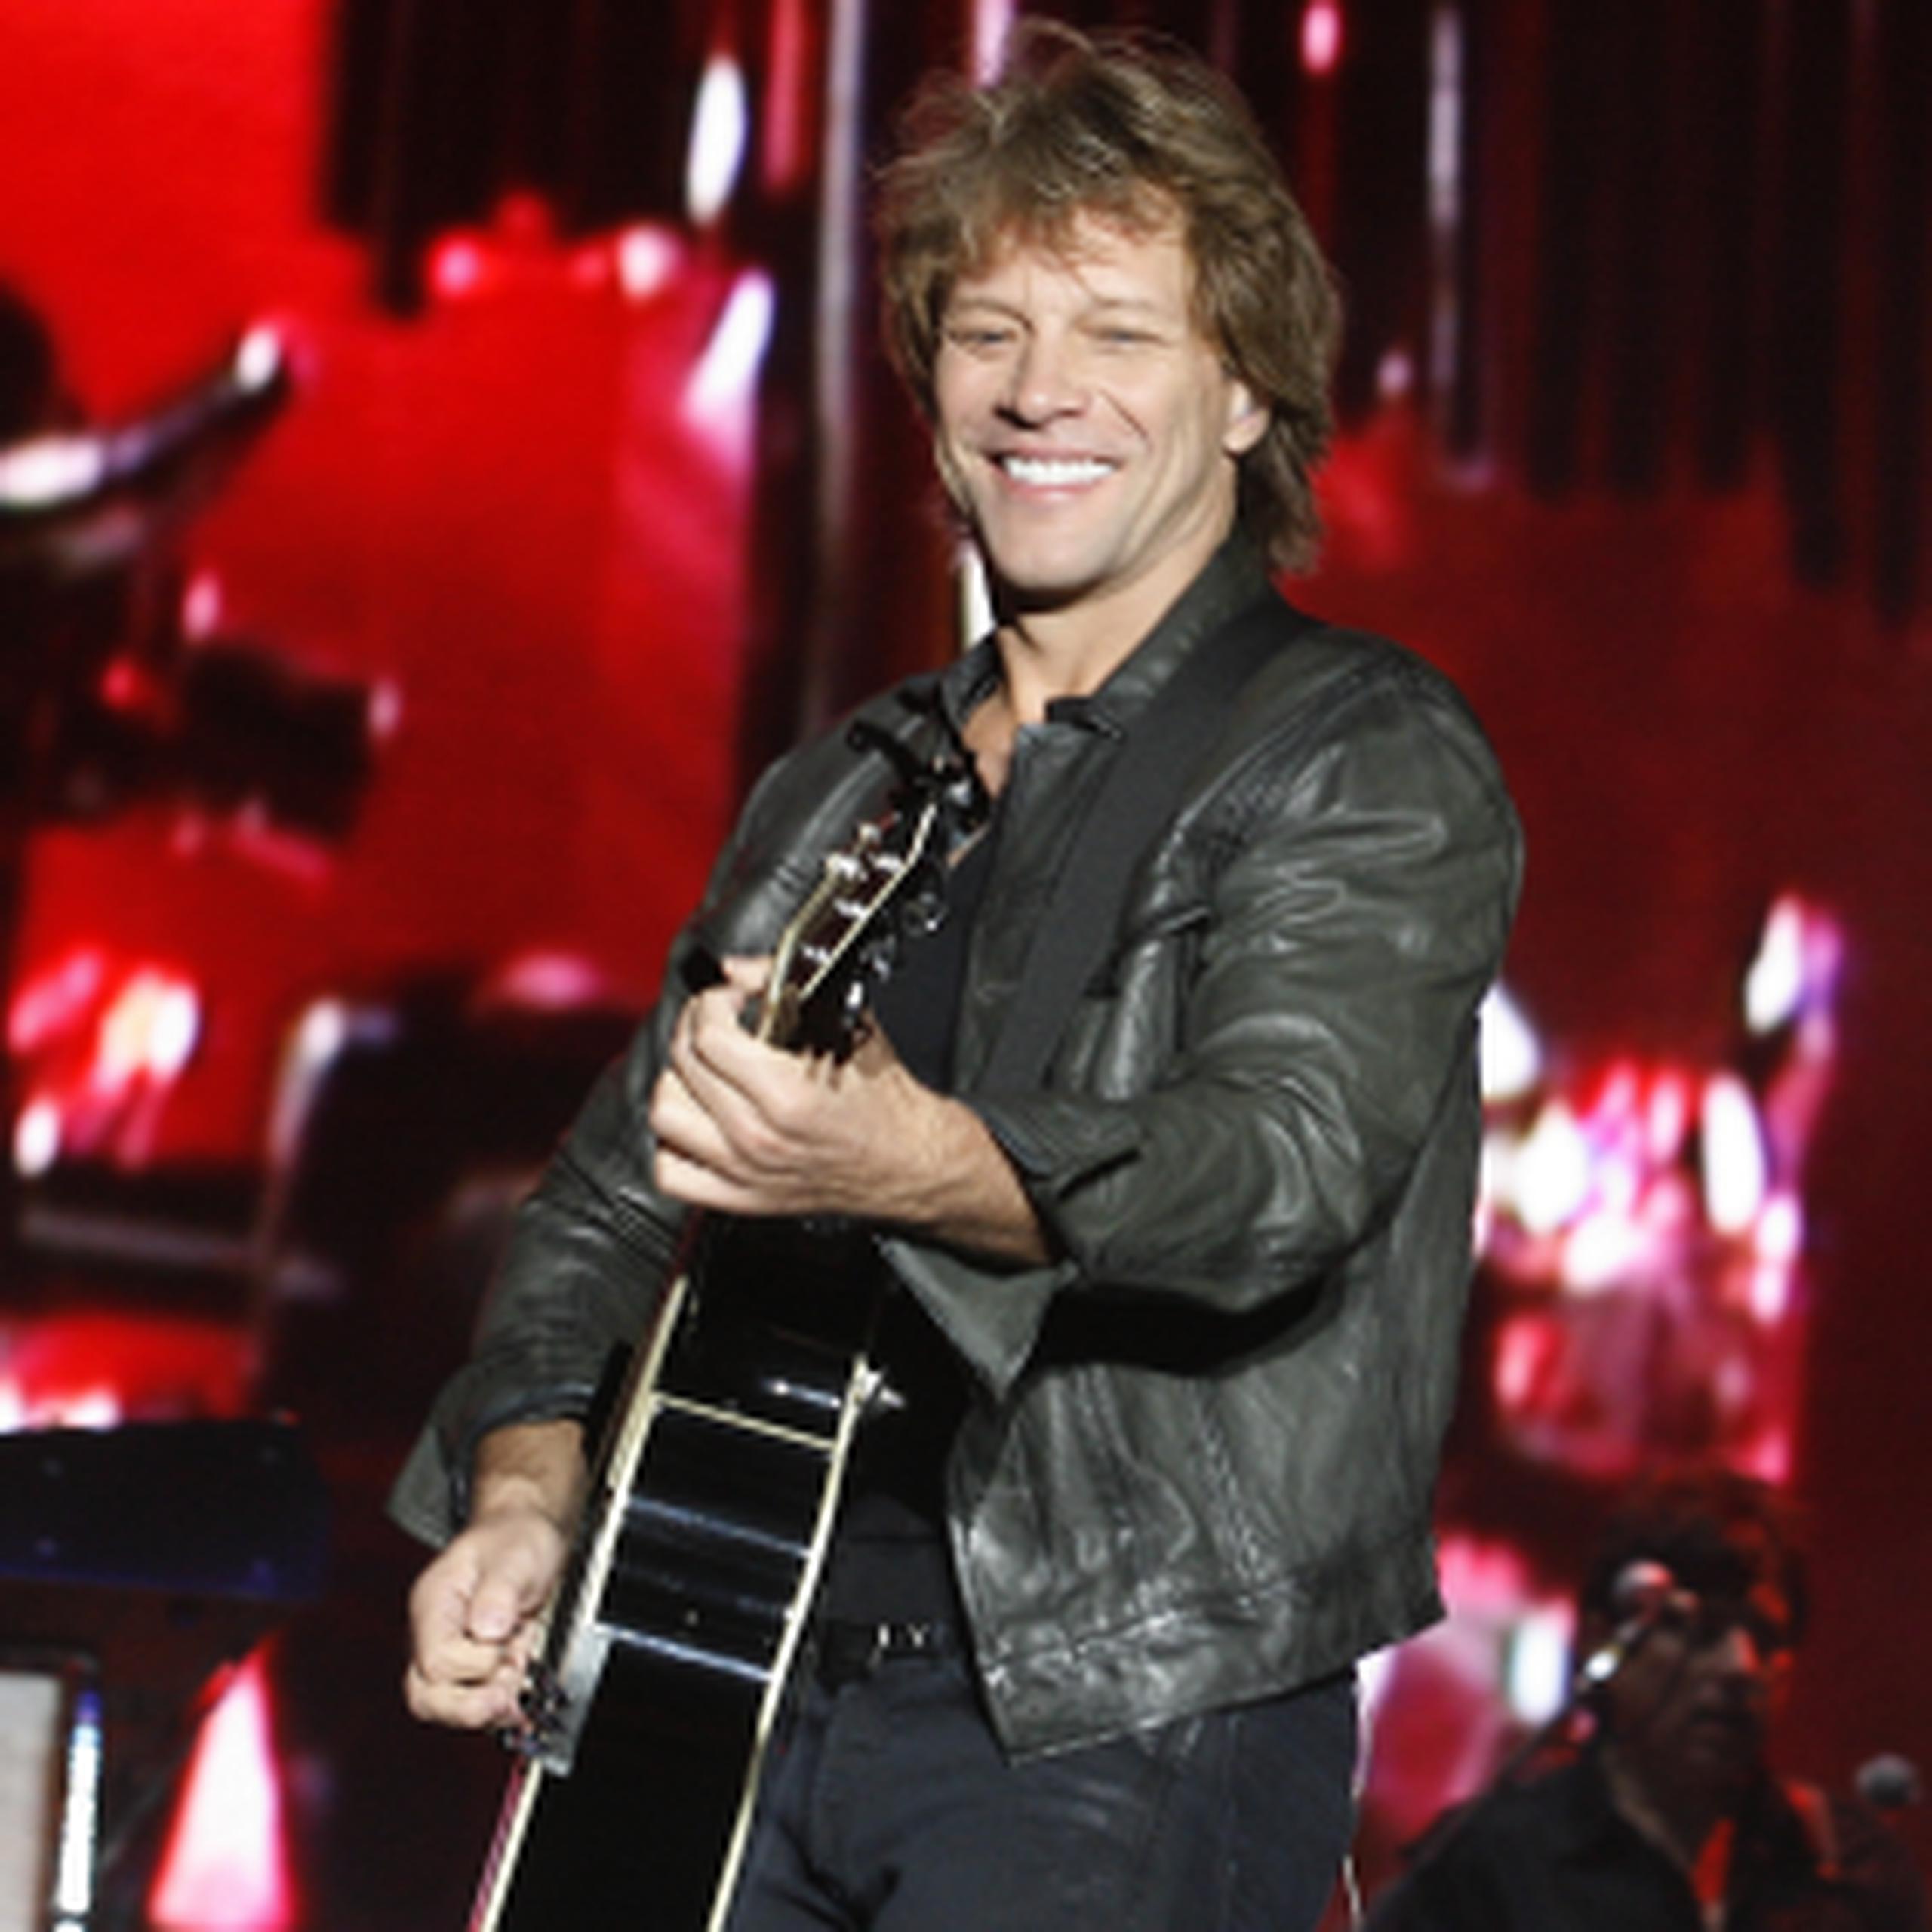 El cantante Bon Jovi participará en el concierto que será conducido por Matt Lauer, del programa "Today".
